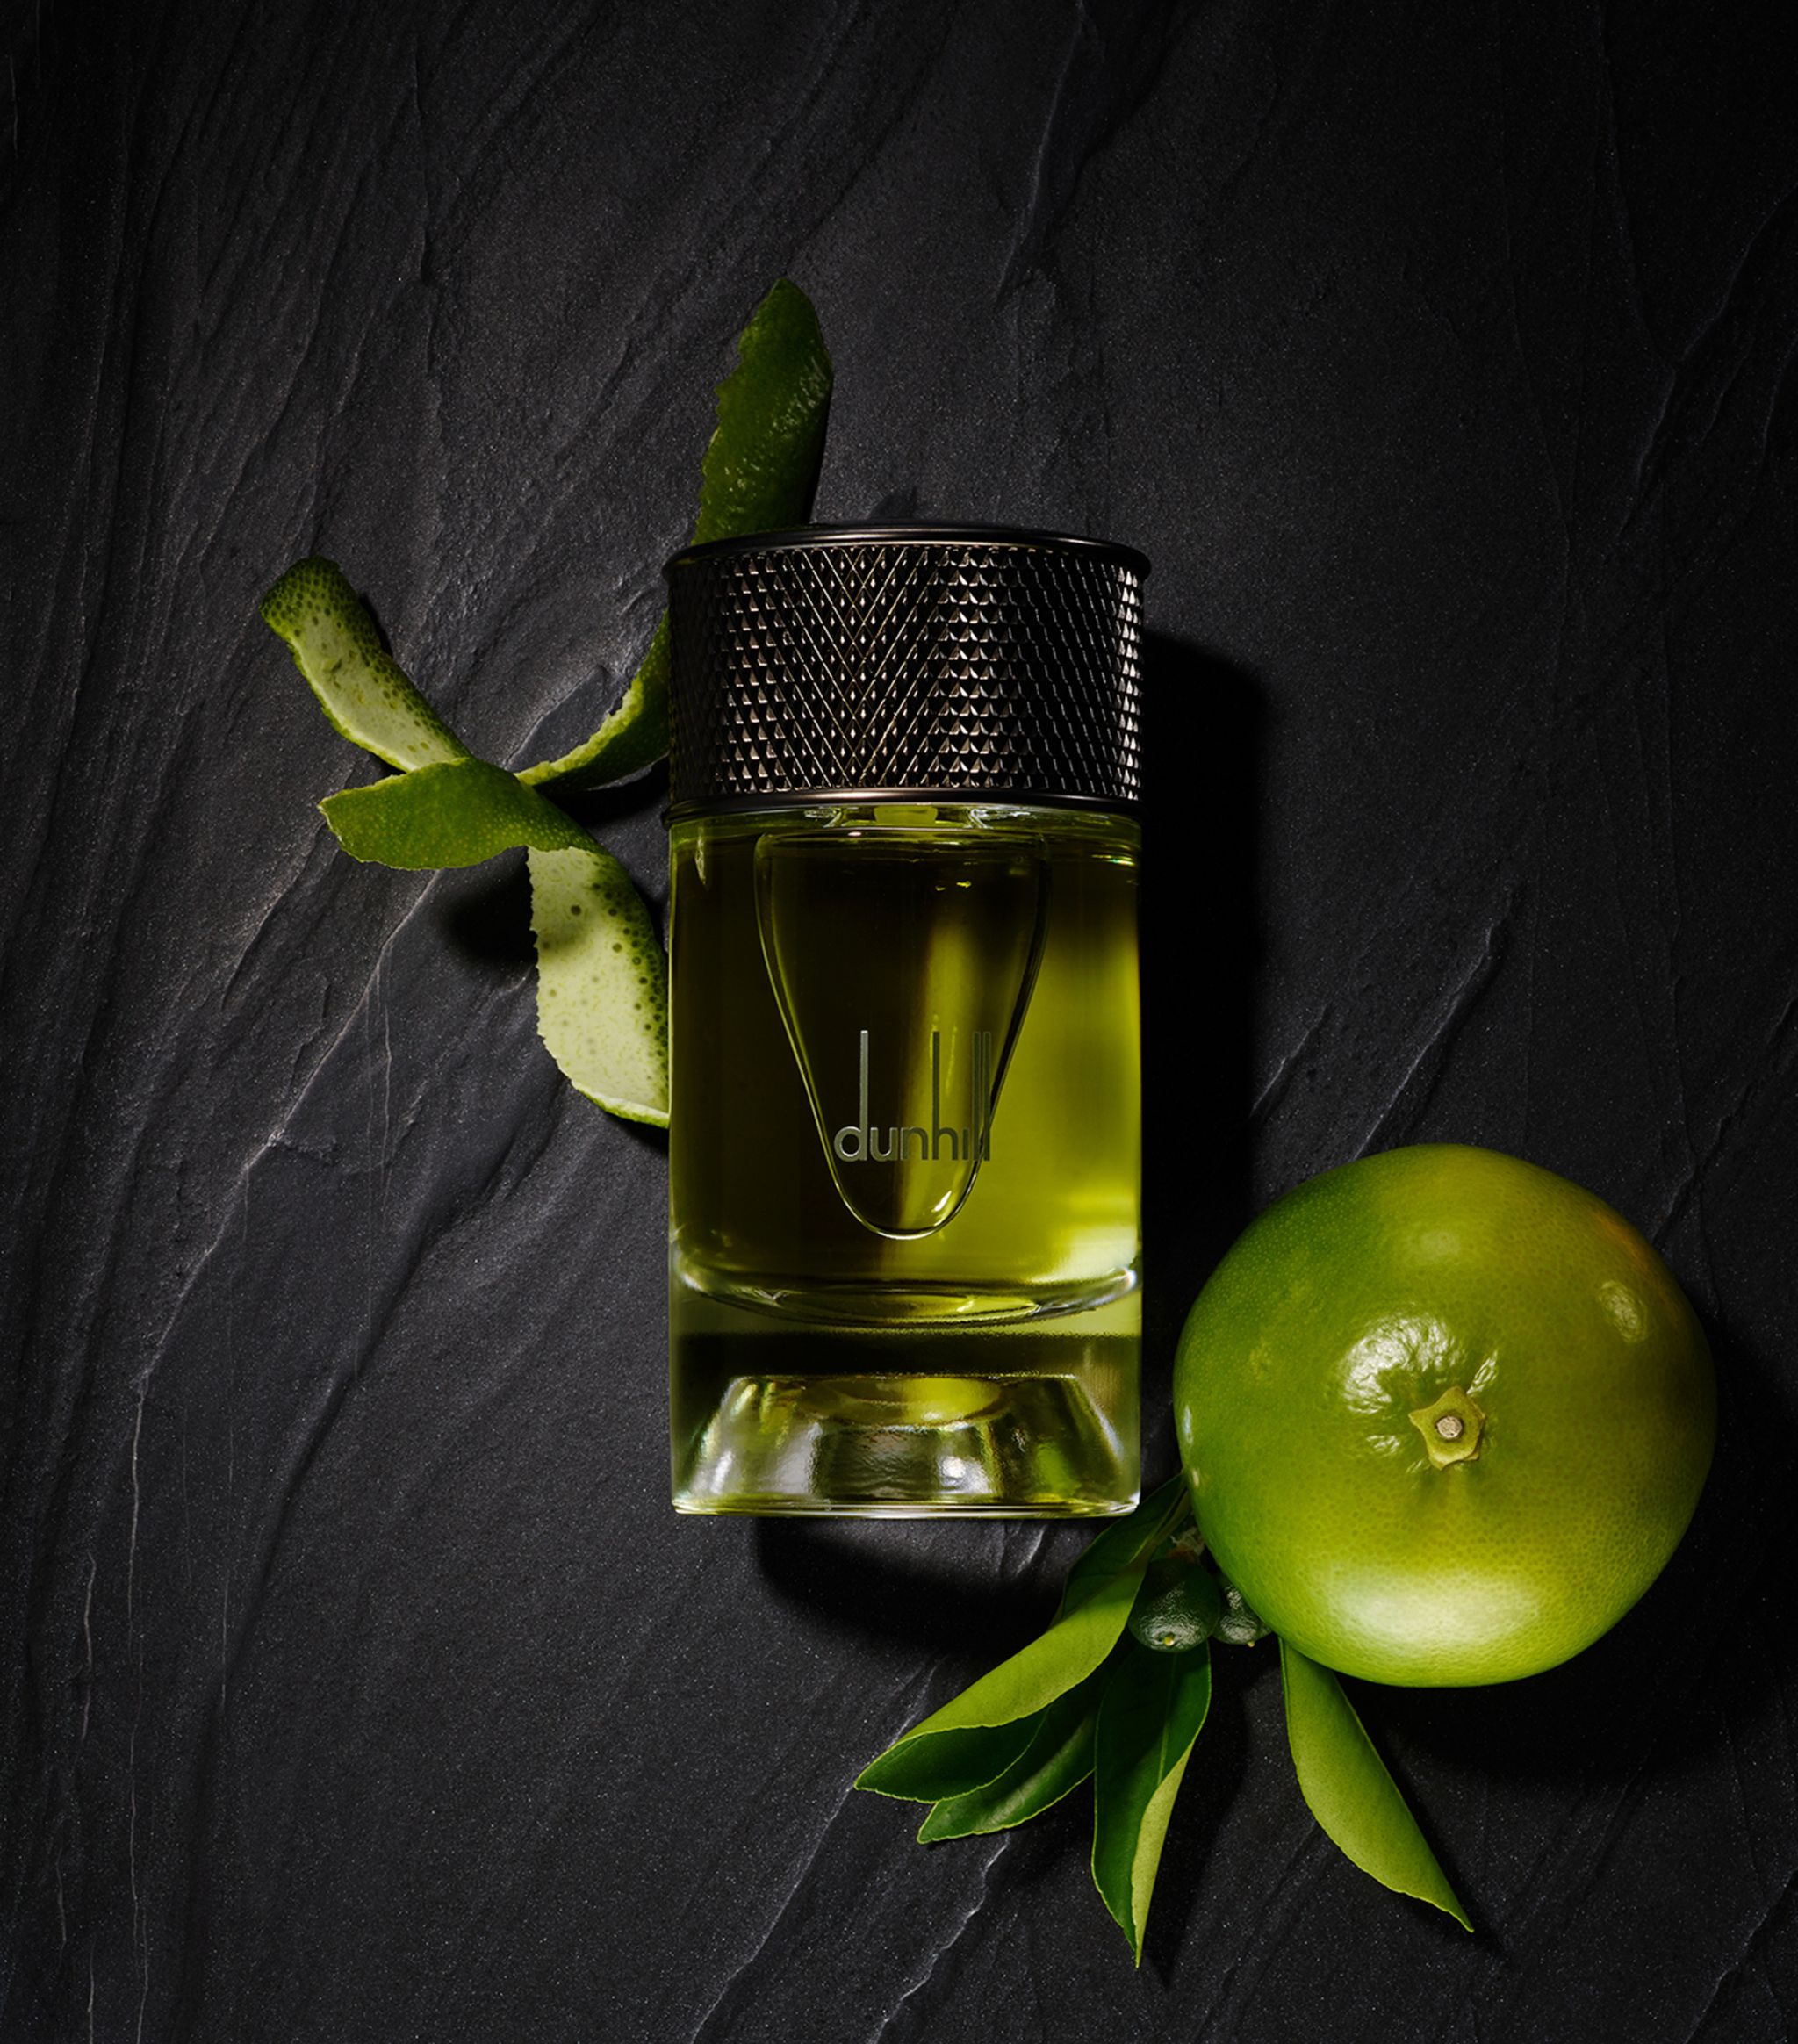 بررسی، مشاهده قیمت و خرید عطر (ادکلن) دانهیل امالفی سیتروس Dunhill Amalfi Citrus اصل